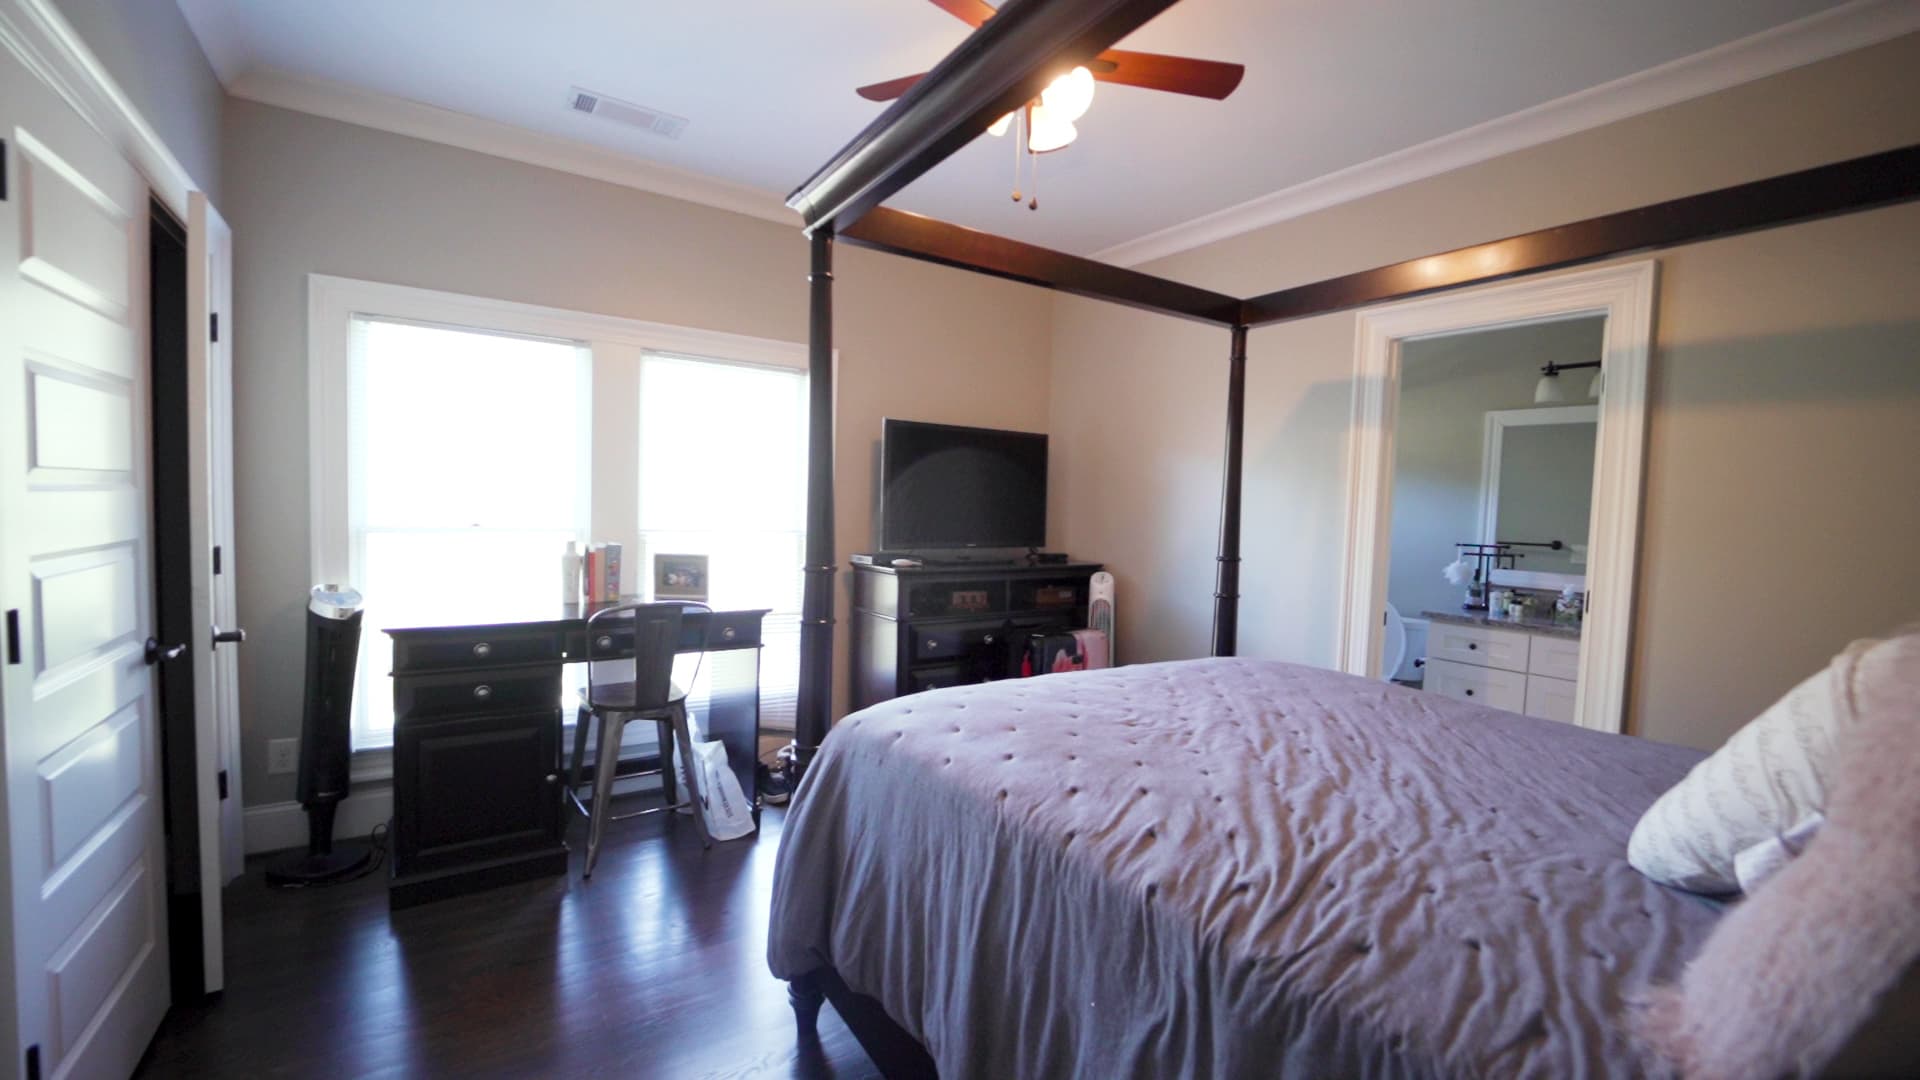 Johnson's bedroom in Atlanta. She has her own room in each family's home in both Atlanta and New York.